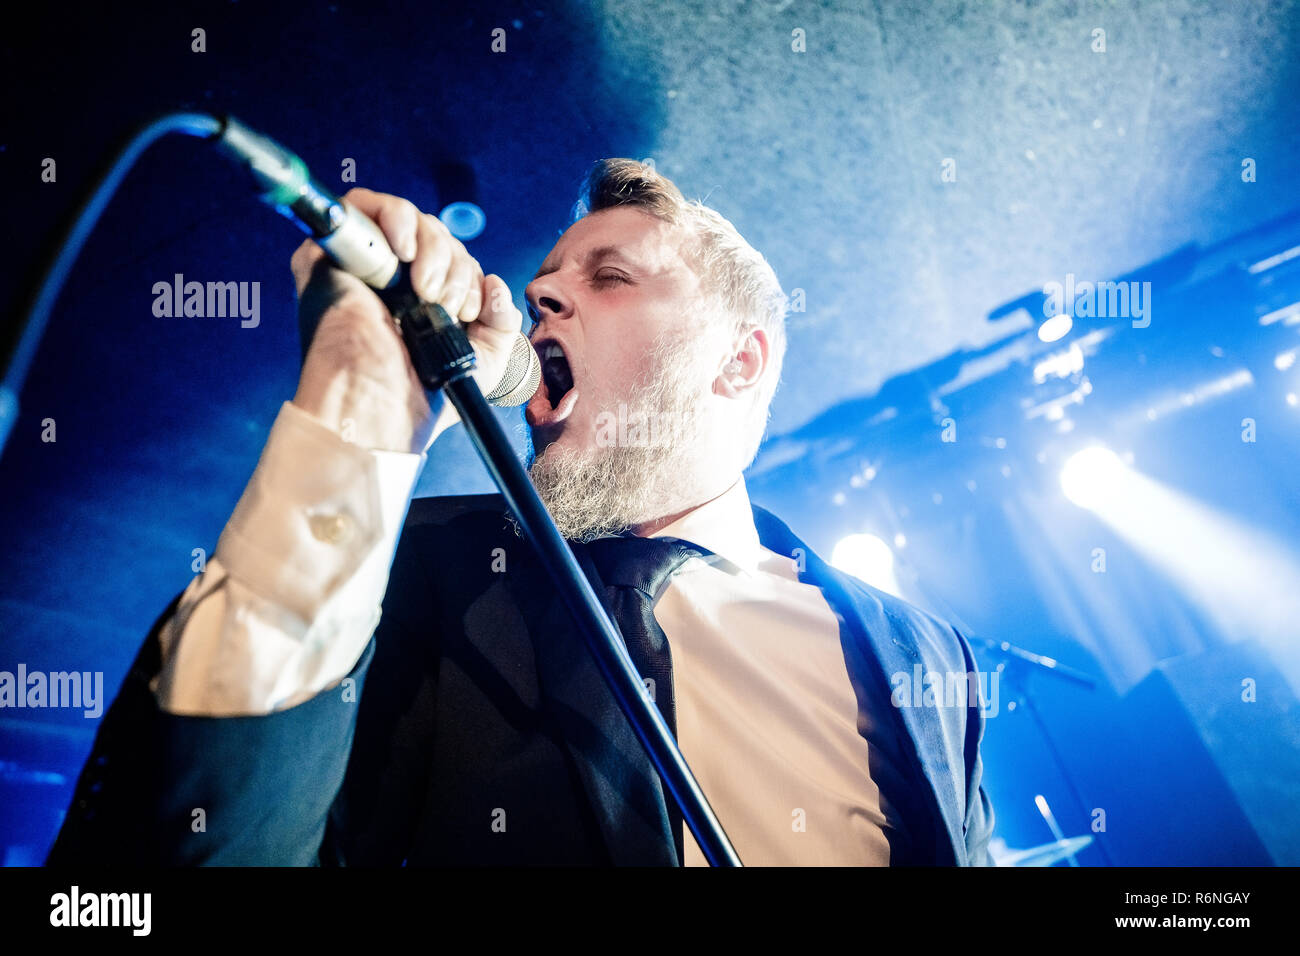 Danemark, copenhague - le 5 décembre 2018. Le groupe de doom metal Hamferd féroïen effectue un concert live à bêta dans Copenhague. Ici le chanteur Jon Aldara est vu sur scène. (Photo crédit : Gonzales Photo - Peter Troest). Banque D'Images